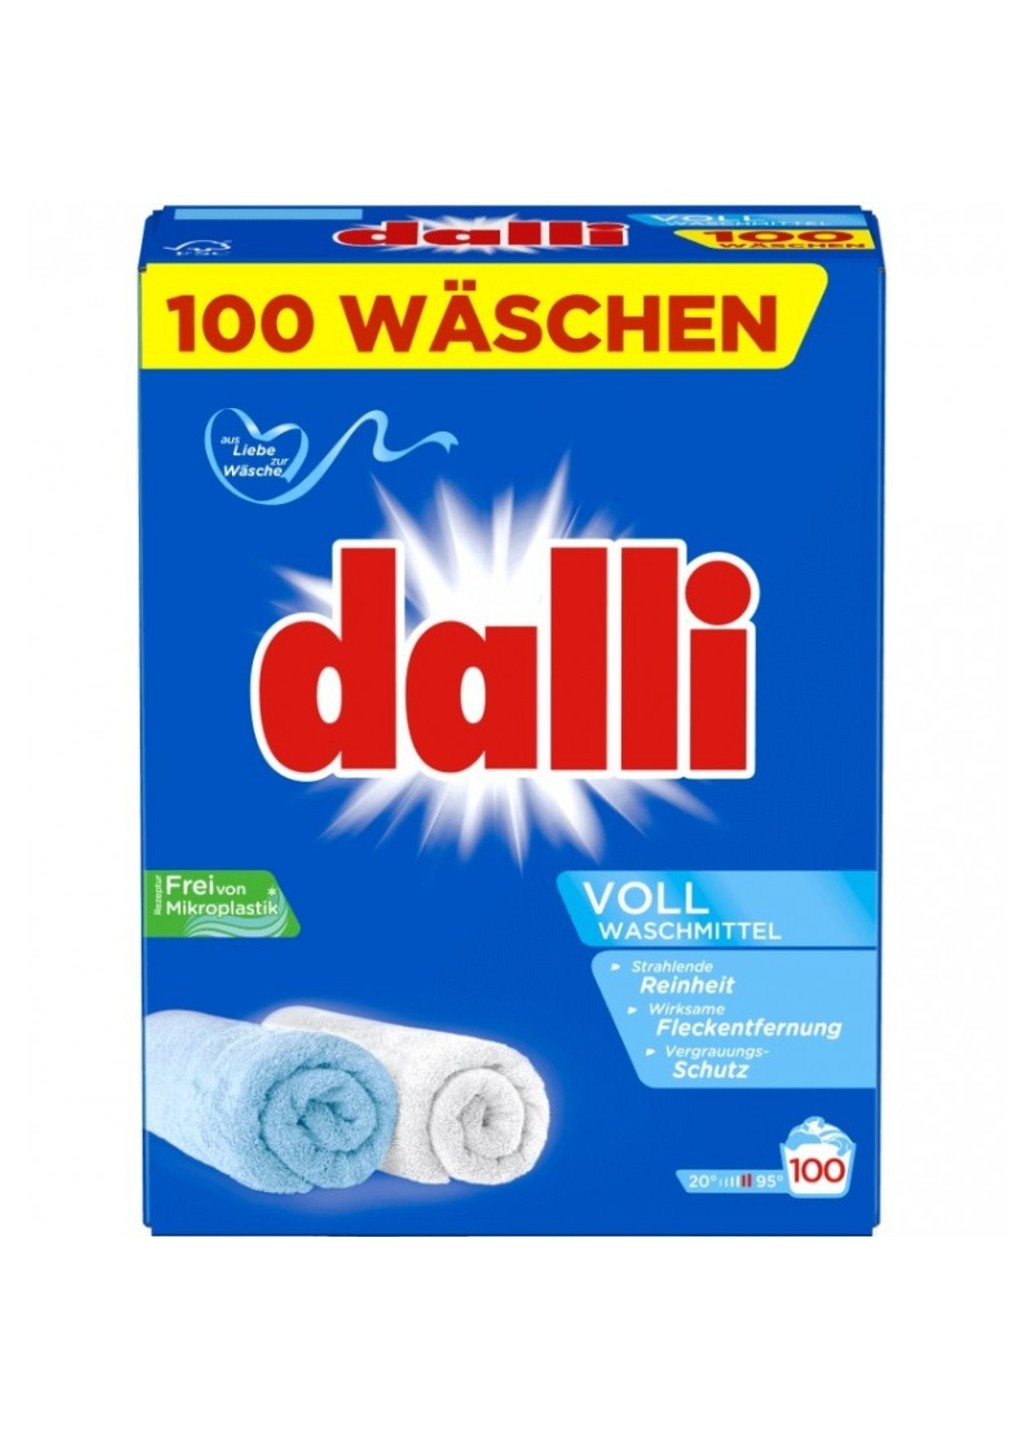 Стиральный порошок Vollwaschmittel 6 кг 100 циклов стирки Dalli (276969550)